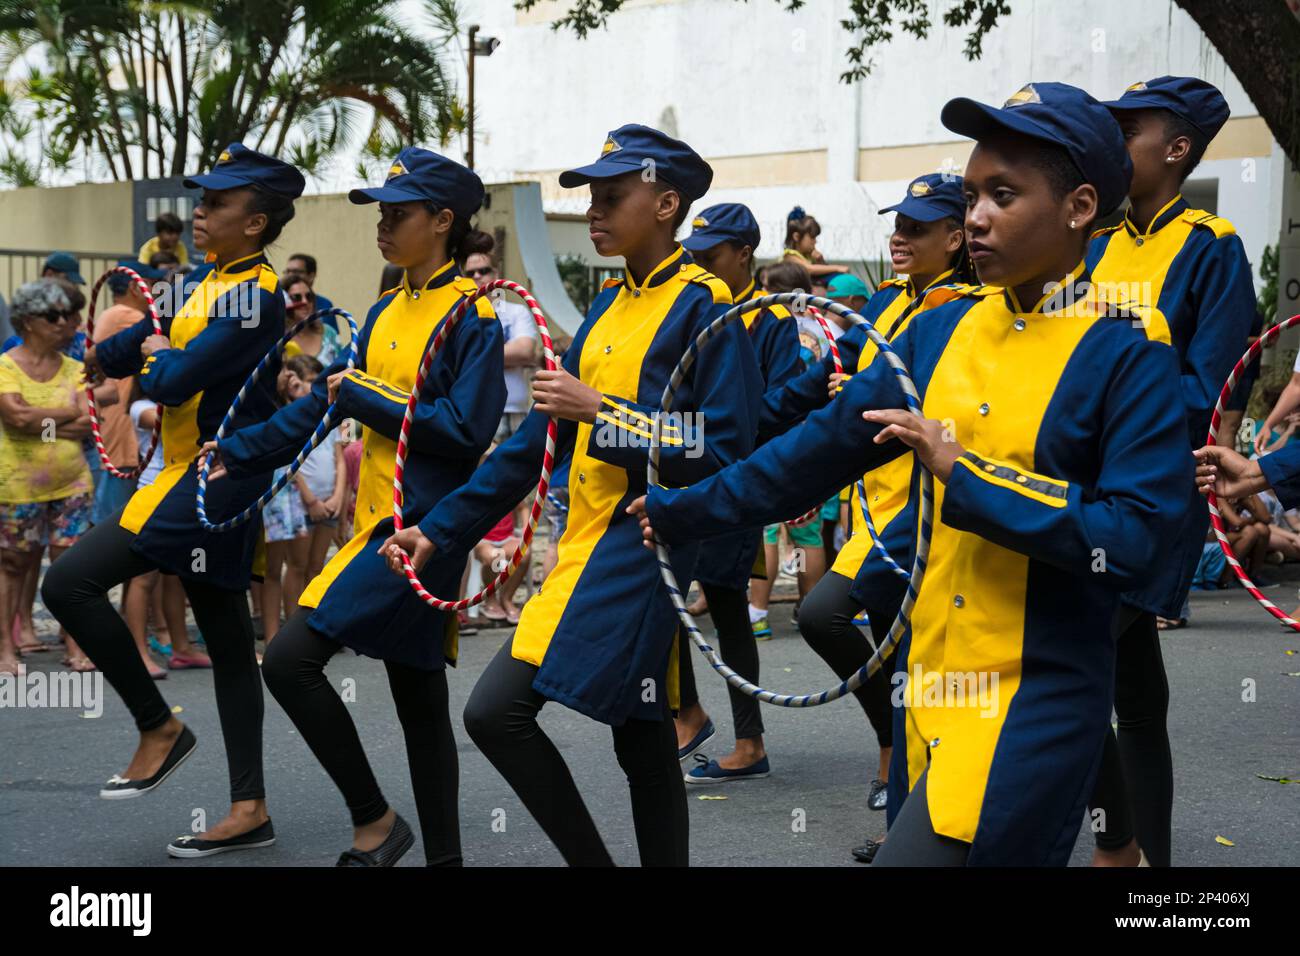 Salvador, Bahia, Brasilien - 07. September 2016: Schülerparade an öffentlichen Schulen während des brasilianischen Unabhängigkeitstages in Salvador, Bahia. Stockfoto